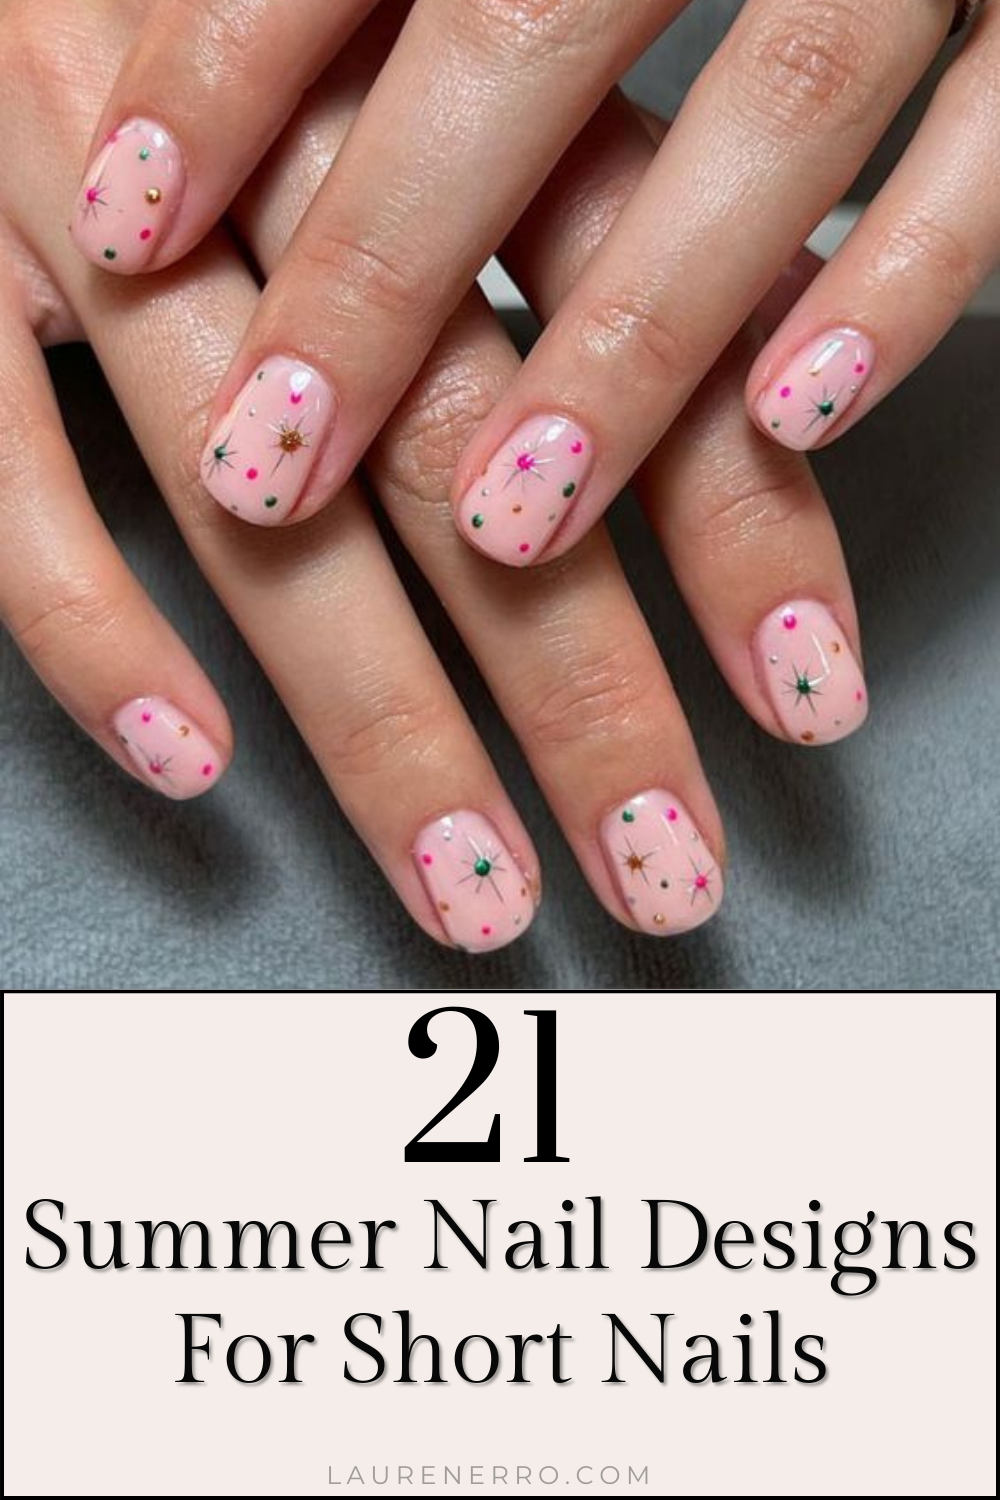 21 Summer Nail Designs For Short Nails